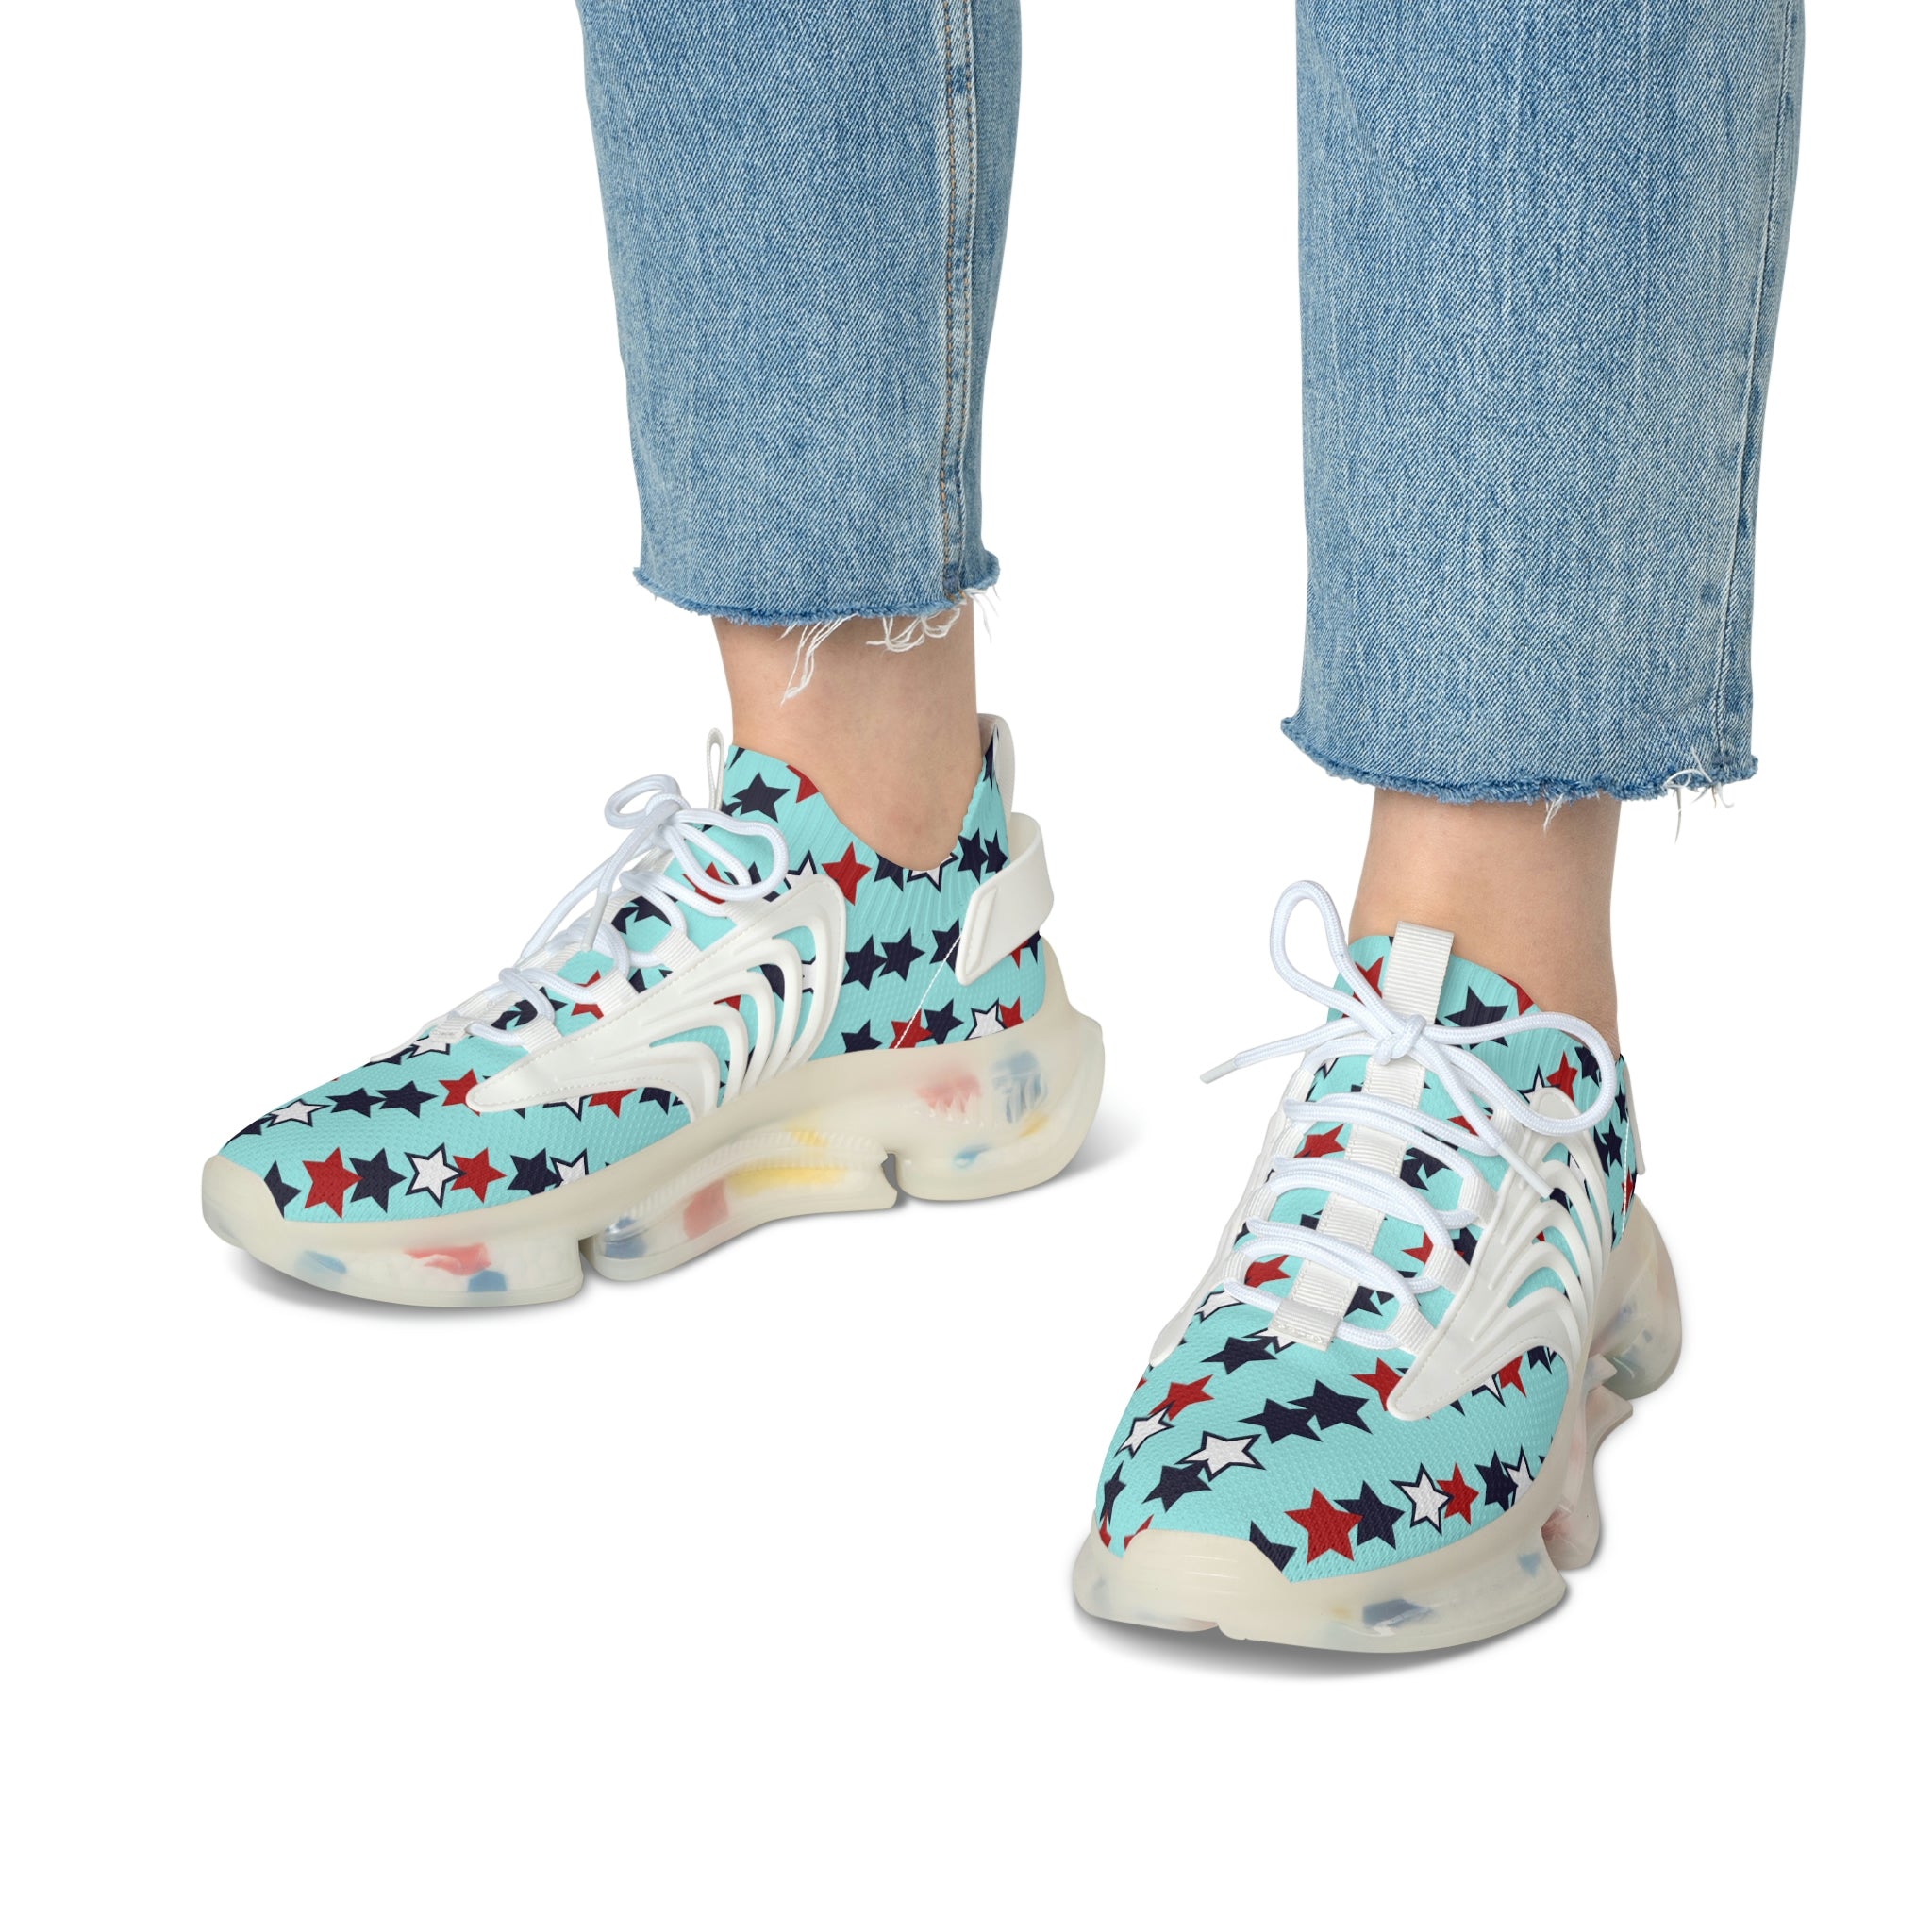 Icy Blue Stargirl OTT Women's Mesh Knit Sneakers